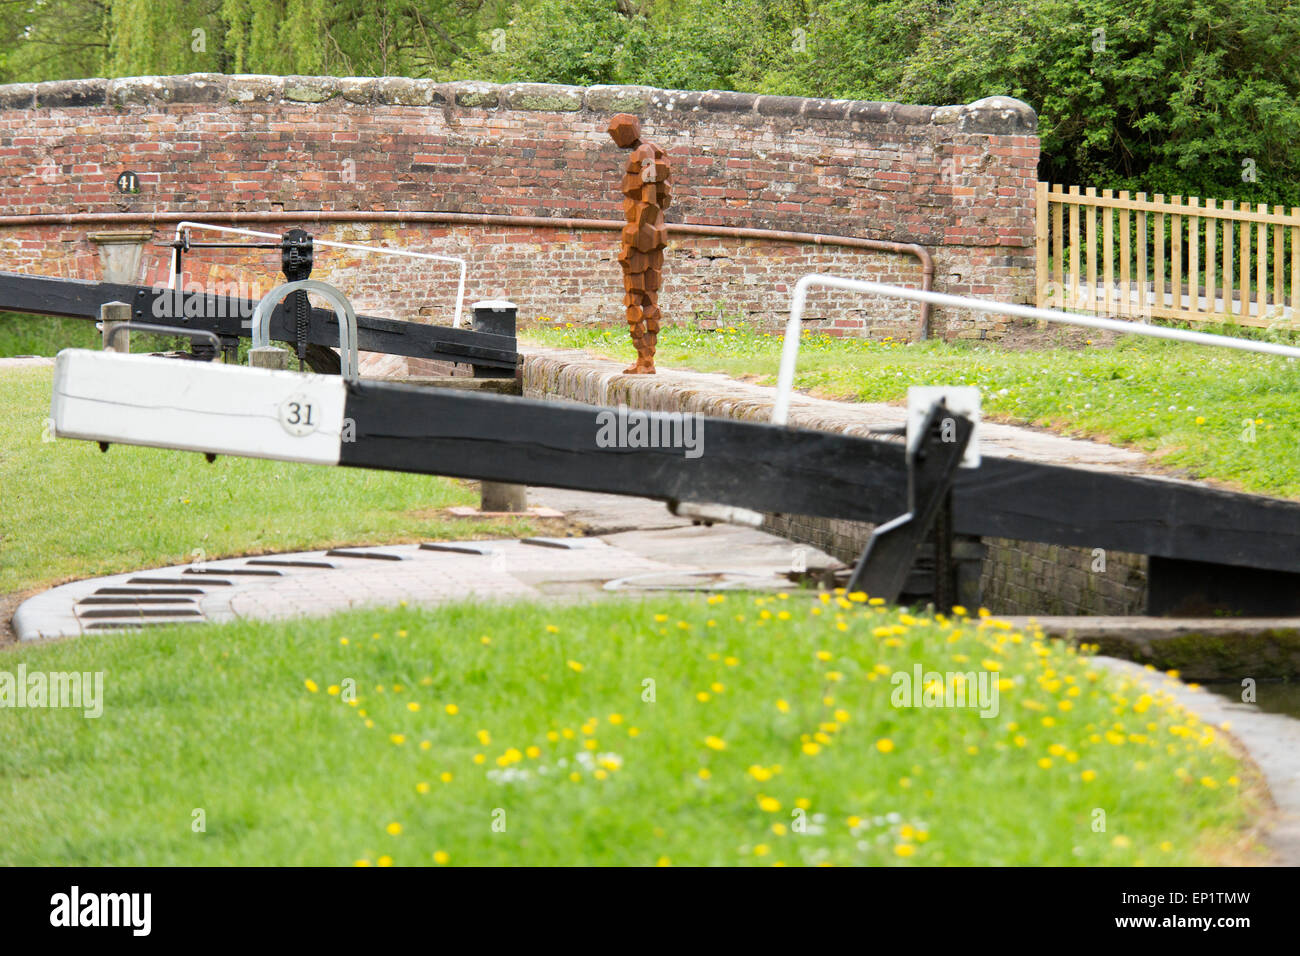 Una nuova scultura dal pittore e scultore Sir Antony Gormley è stata svelata su un Warwickshire canal in Lowsonford. Foto Stock